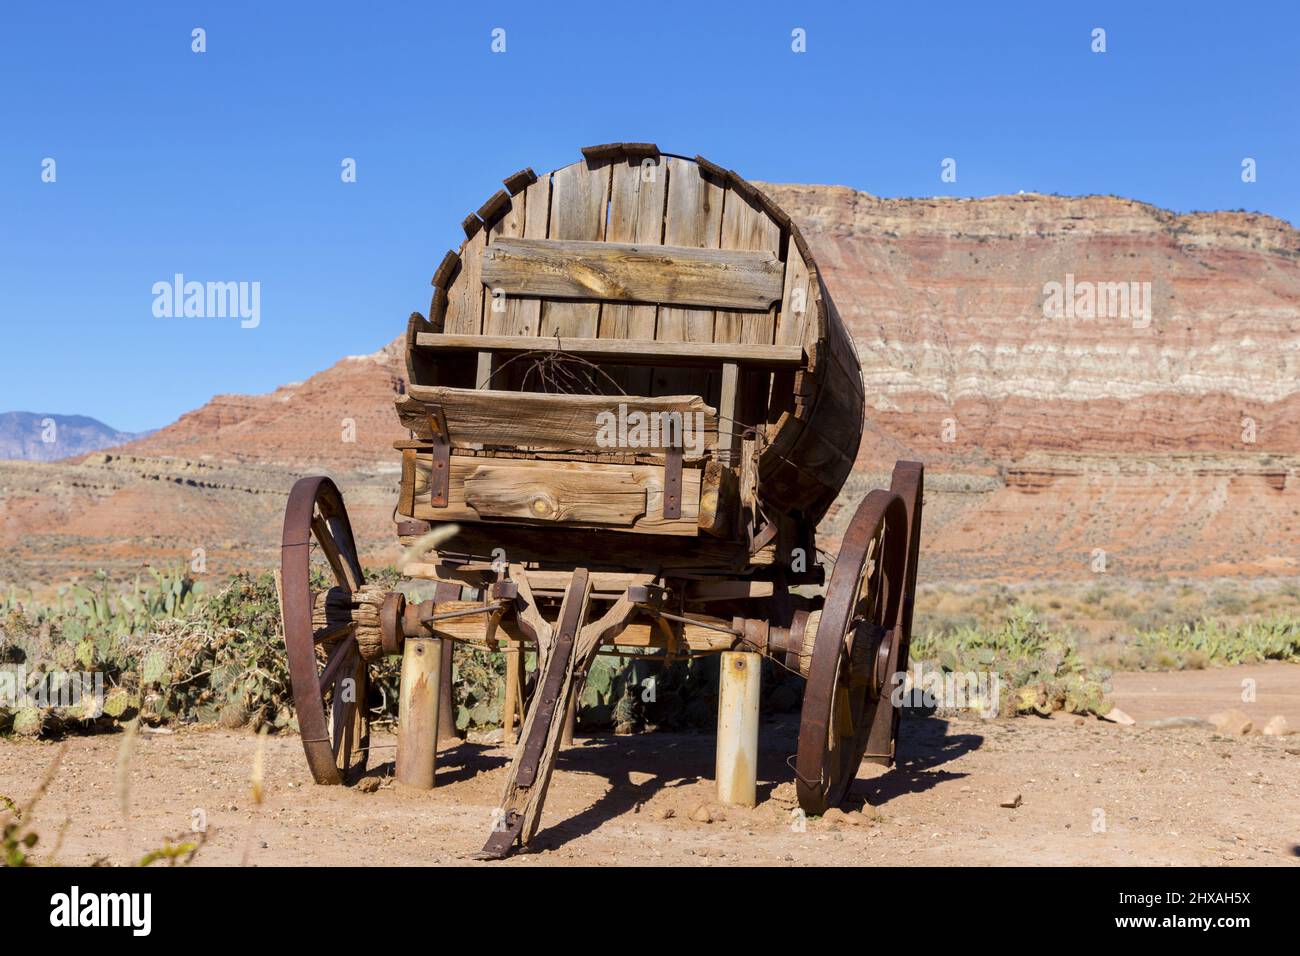 Isolierte alte Vintage Holz Wild West Stage Coach Wagon Rad Replik mit Western Red Rock Canyon Cliffs Utah Landschaft im Hintergrund Stockfoto